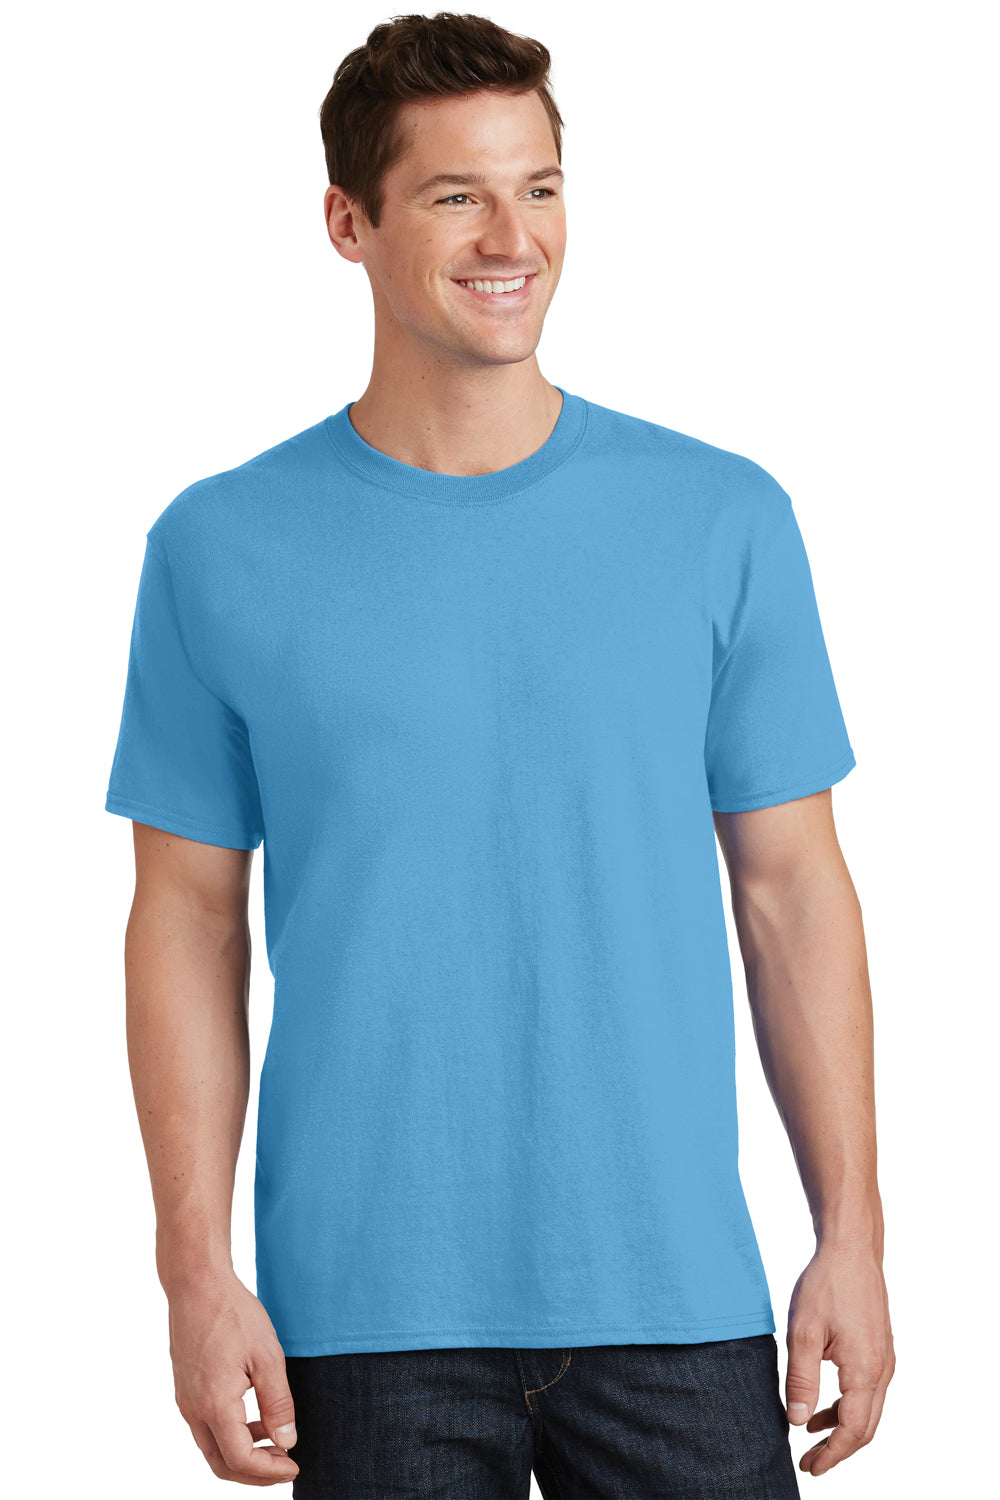 Port & Company PC54 Mens Core Short Sleeve Crewneck T-Shirt Aqua Blue Front